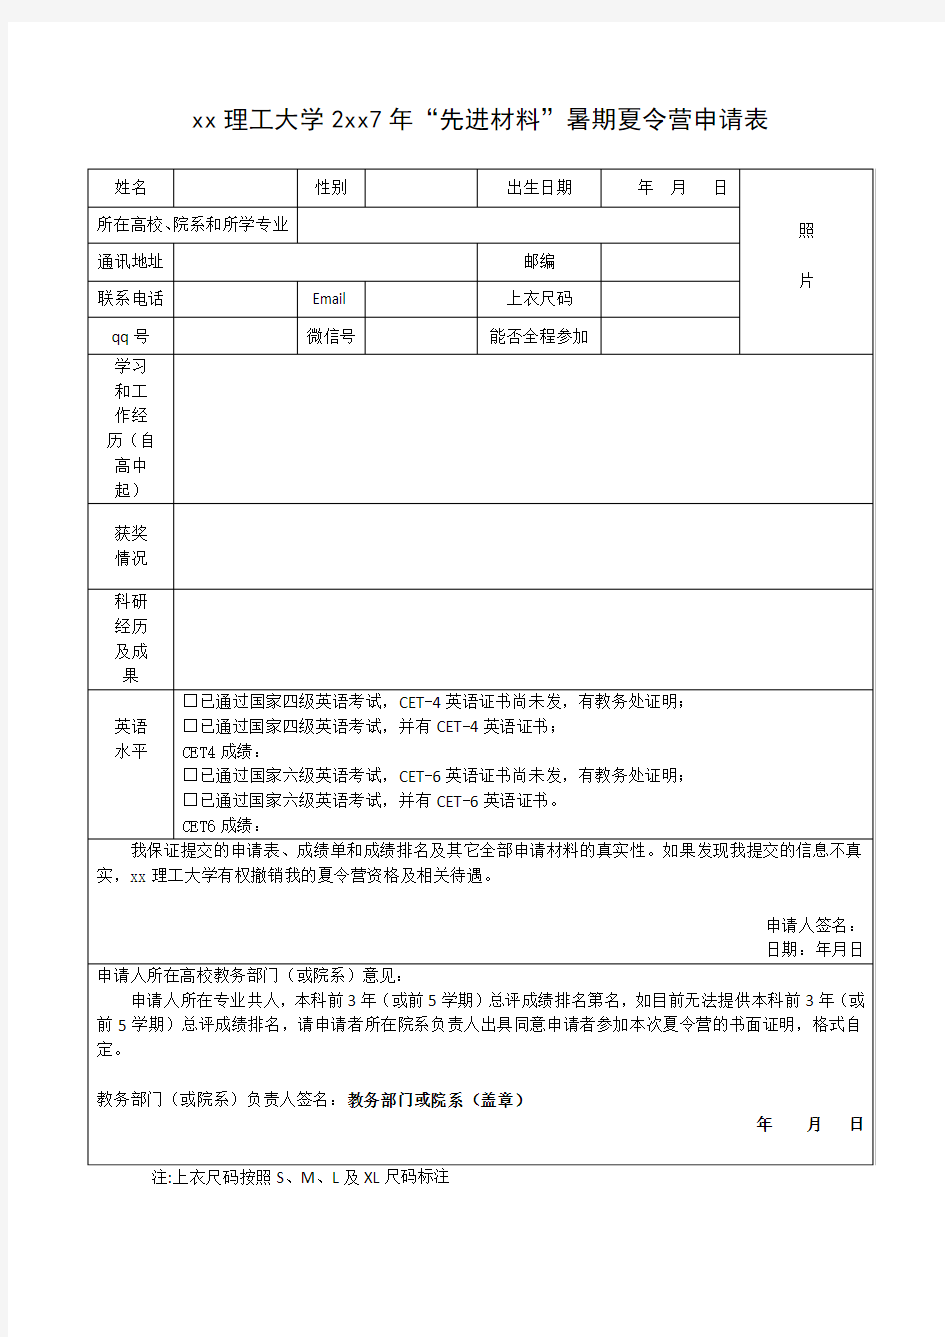 北京理工大学2017年先进材料暑期夏令营申请表